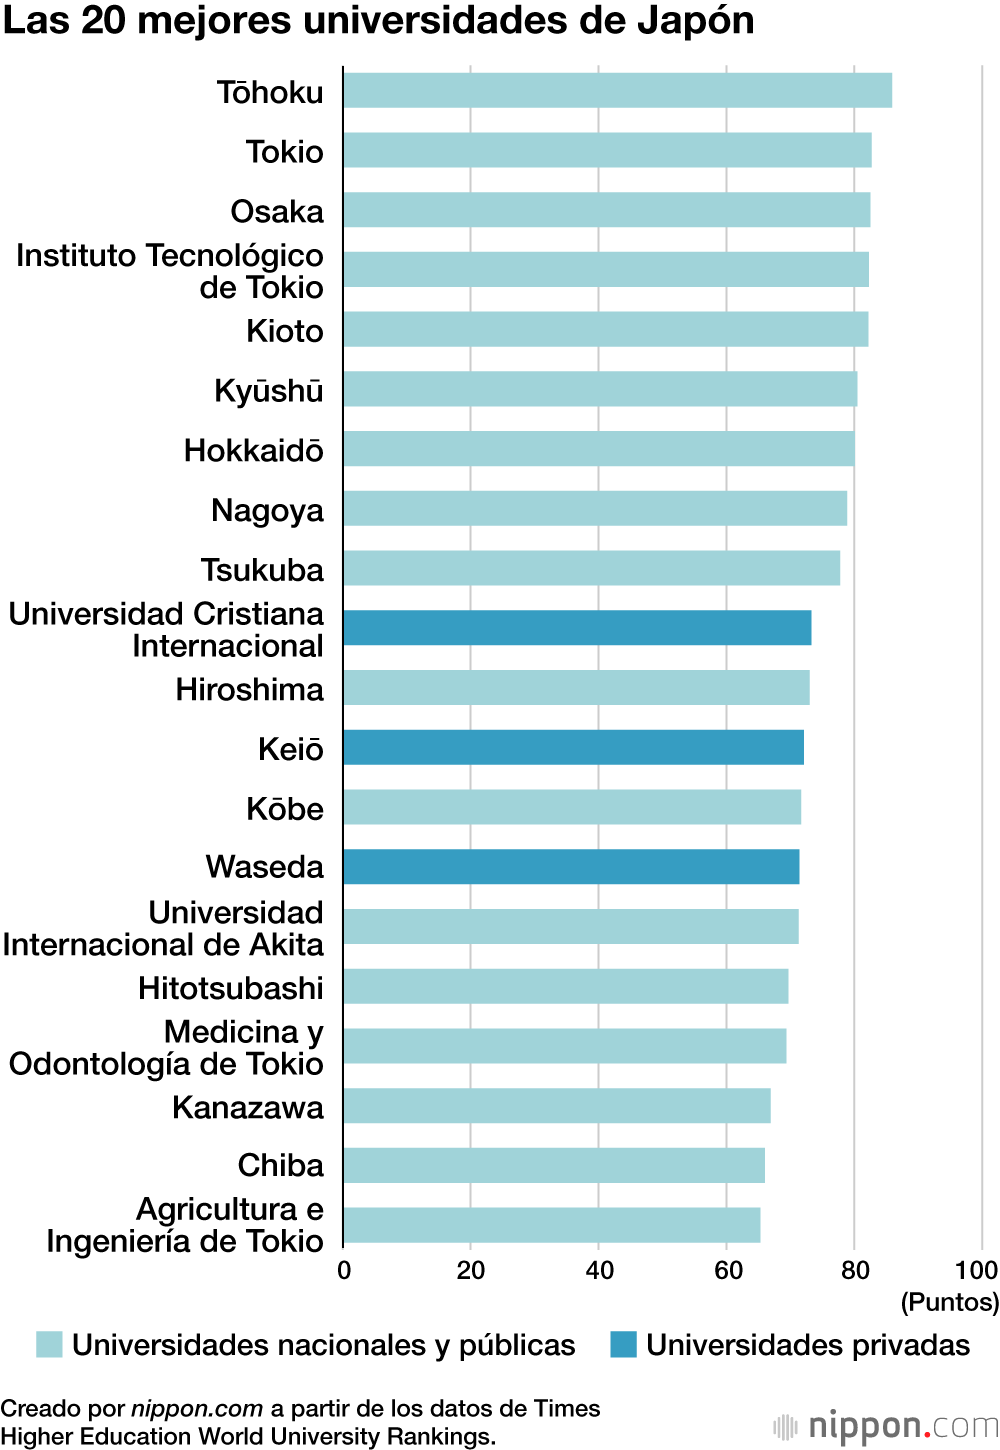 Las 20 mejores universidades de Japón